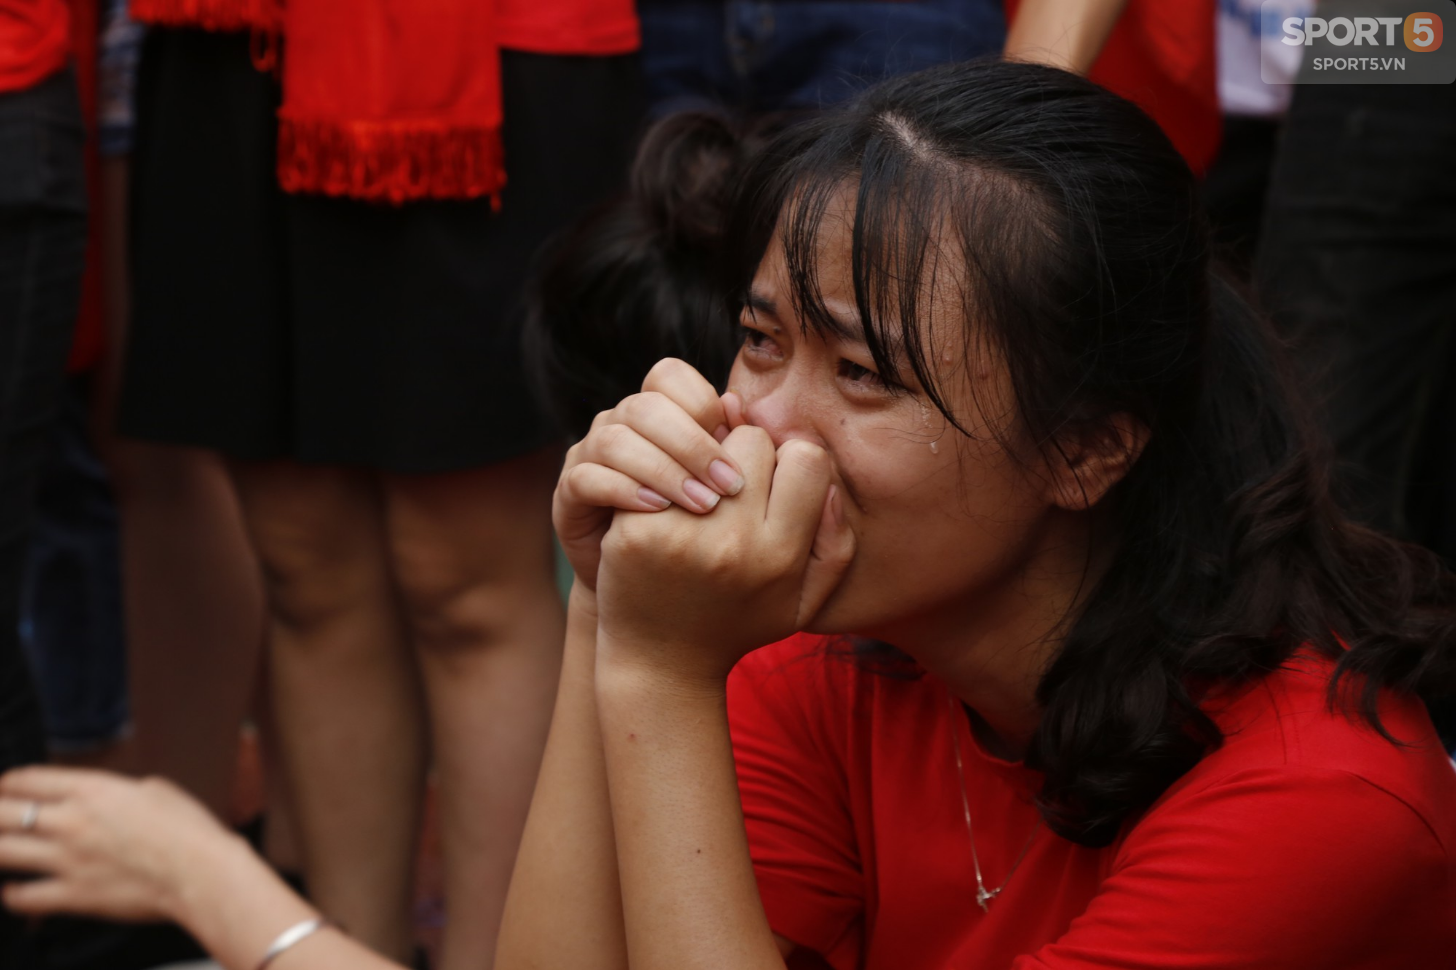 Từ cái chắp tay cầu nguyện tới khóe mắt đỏ hoe của người hâm mộ vì Olympic Việt Nam gục ngã - Ảnh 10.